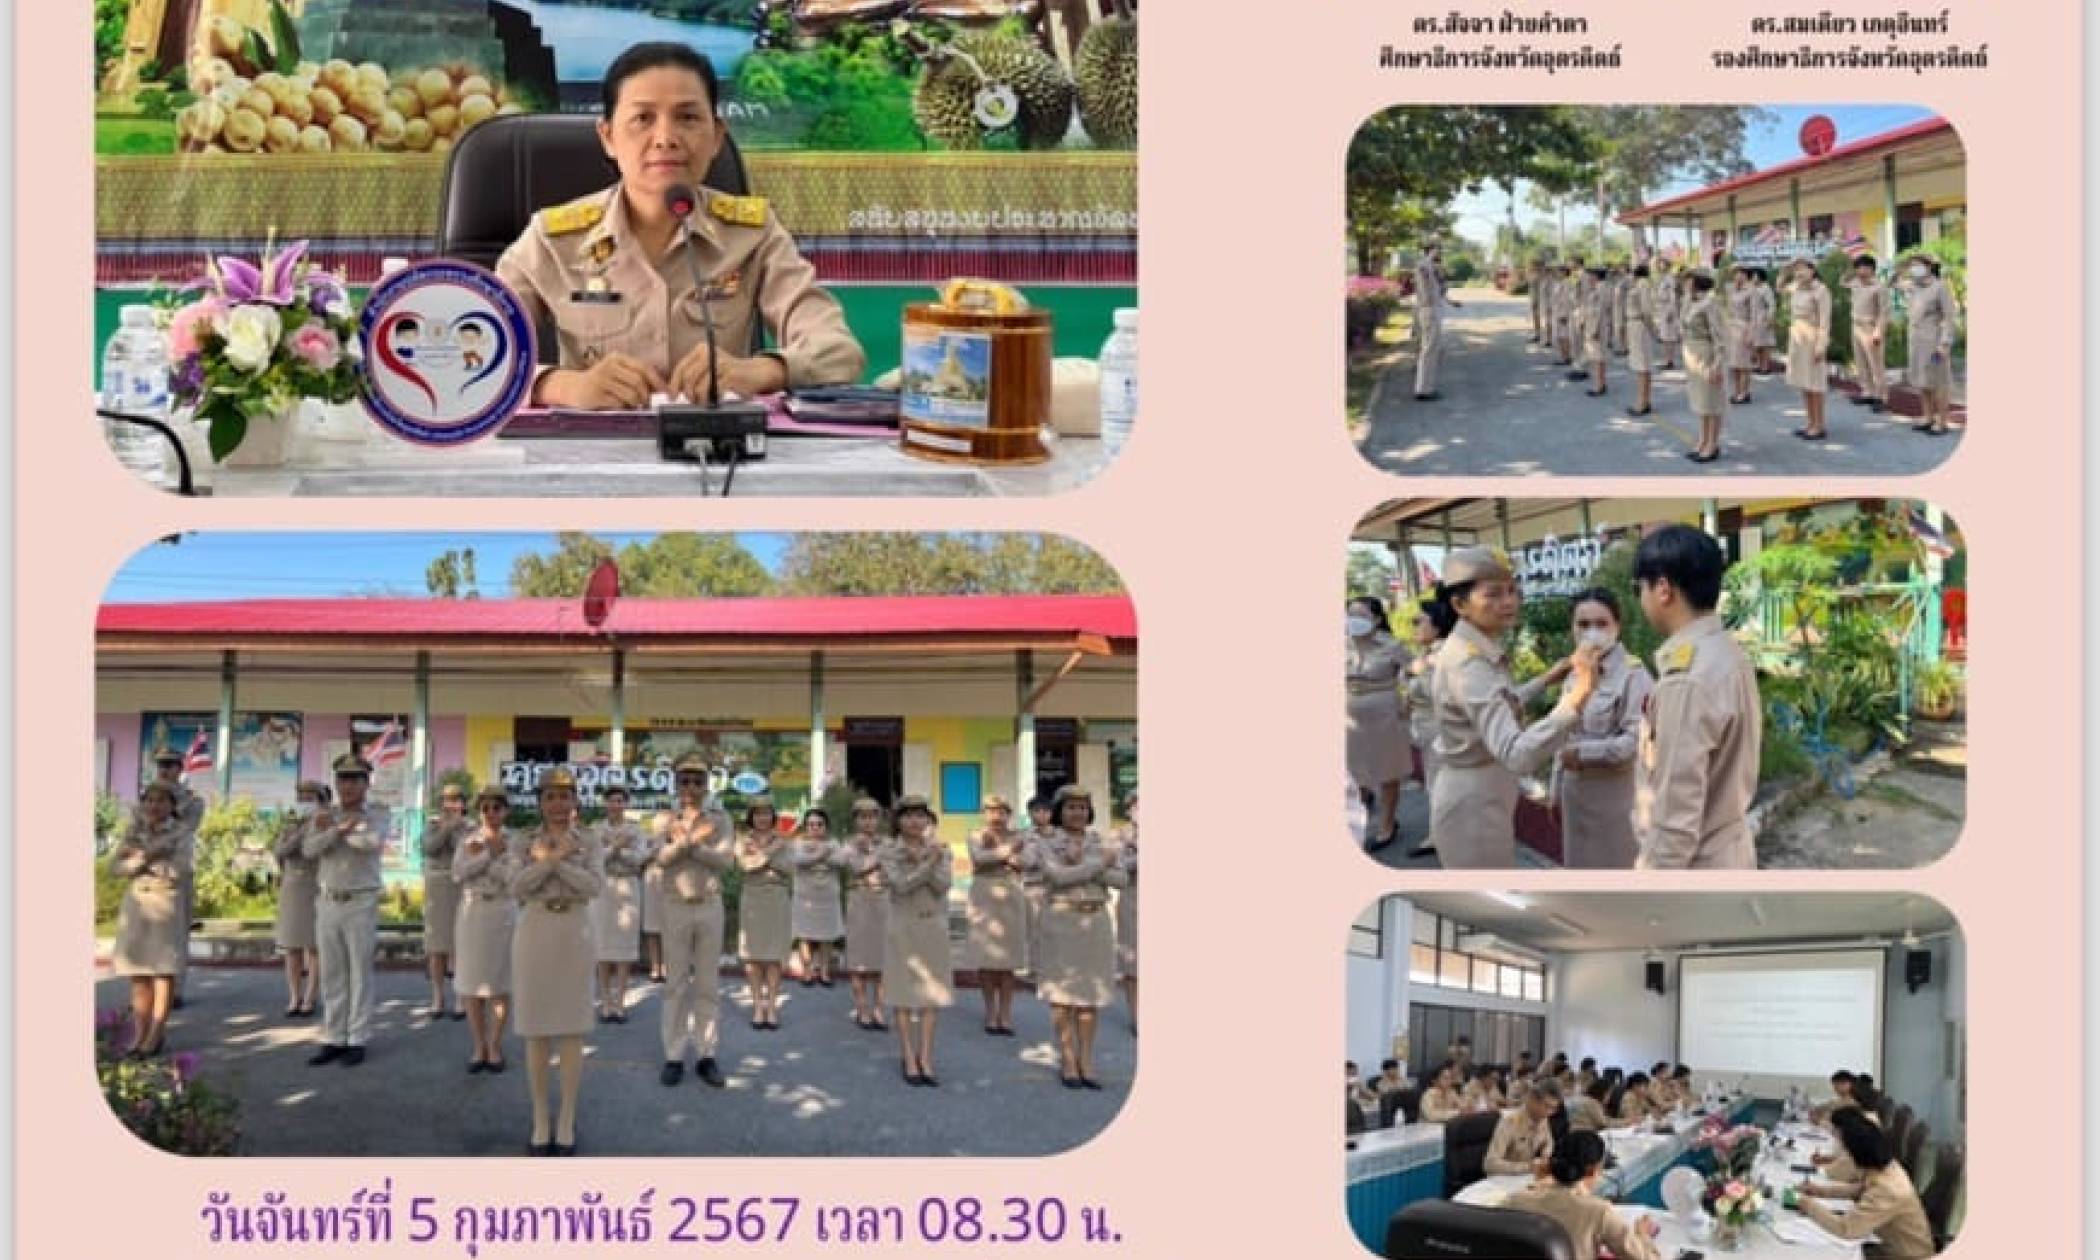 ร่วมกิจกรรมเคารพธงชาติ สวดมนต์ไหว้พระ และประชุมบุคลากรสำนักงานศึกษาธิการจังหวัดอุตรดิตถ์ ครั้งที่ 2/2567